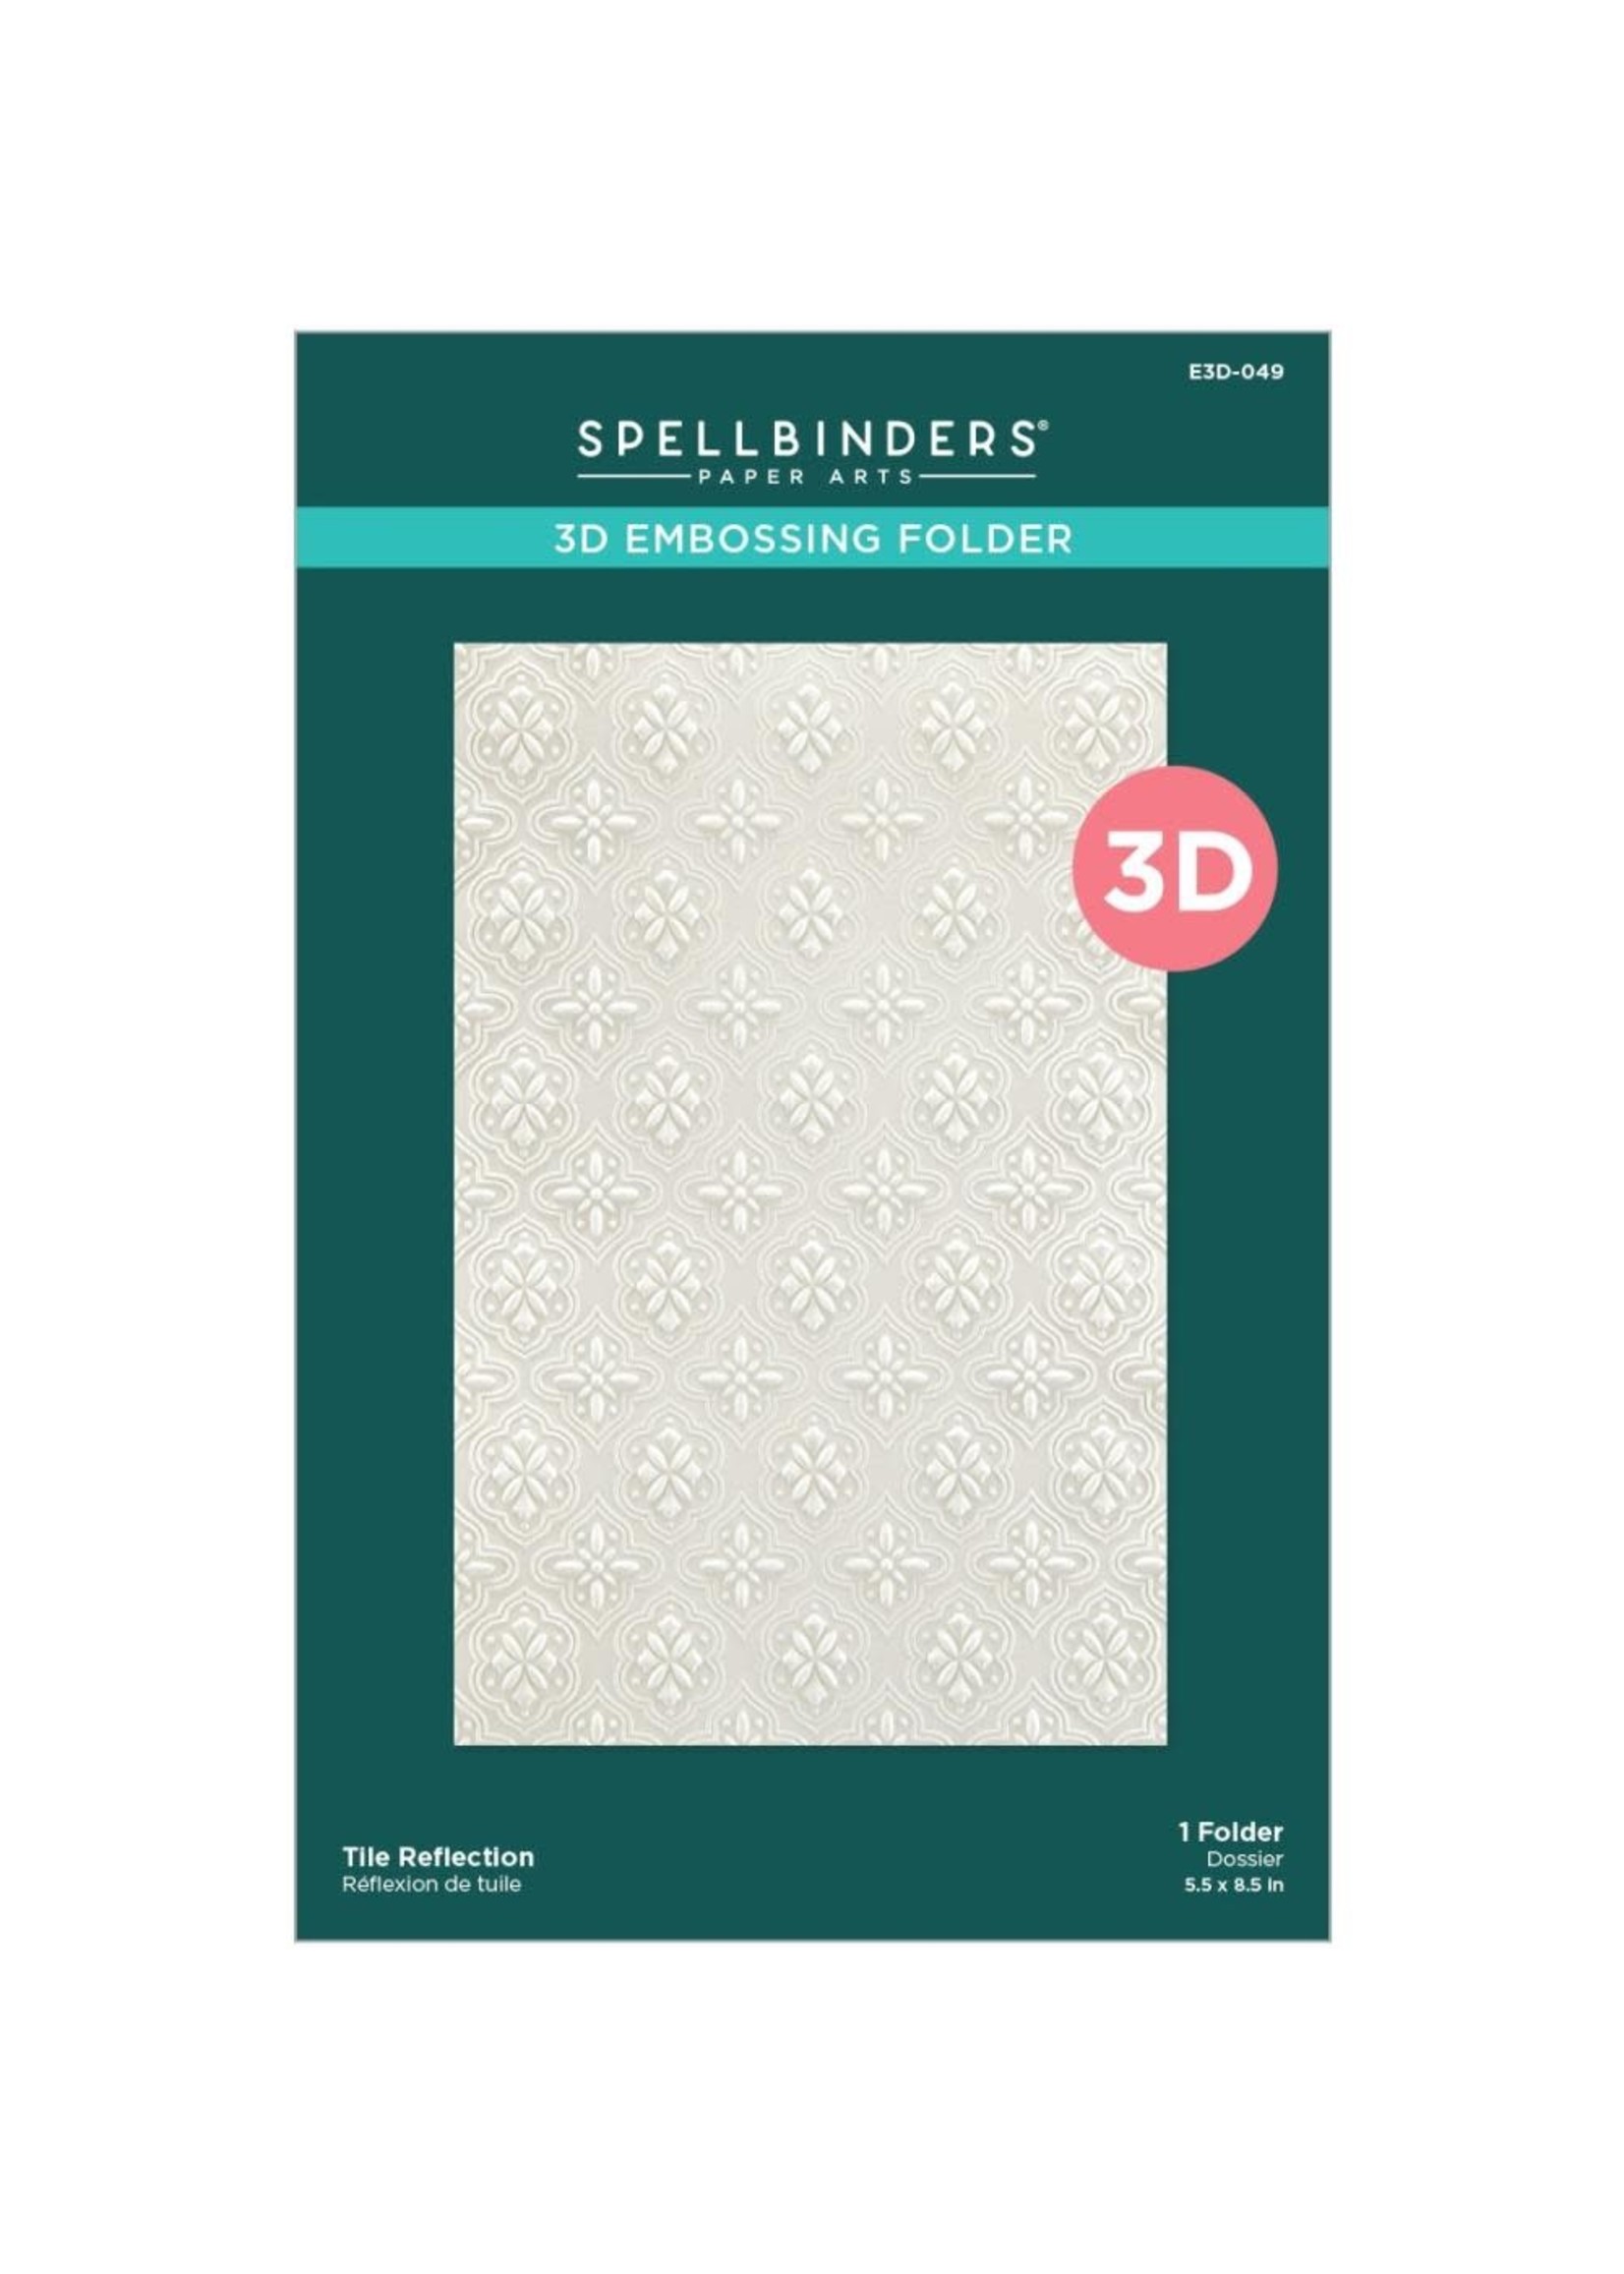 SPELLBINDERS PAPERCRAFTS, INC Embossing Folder 3D Tile Reflection